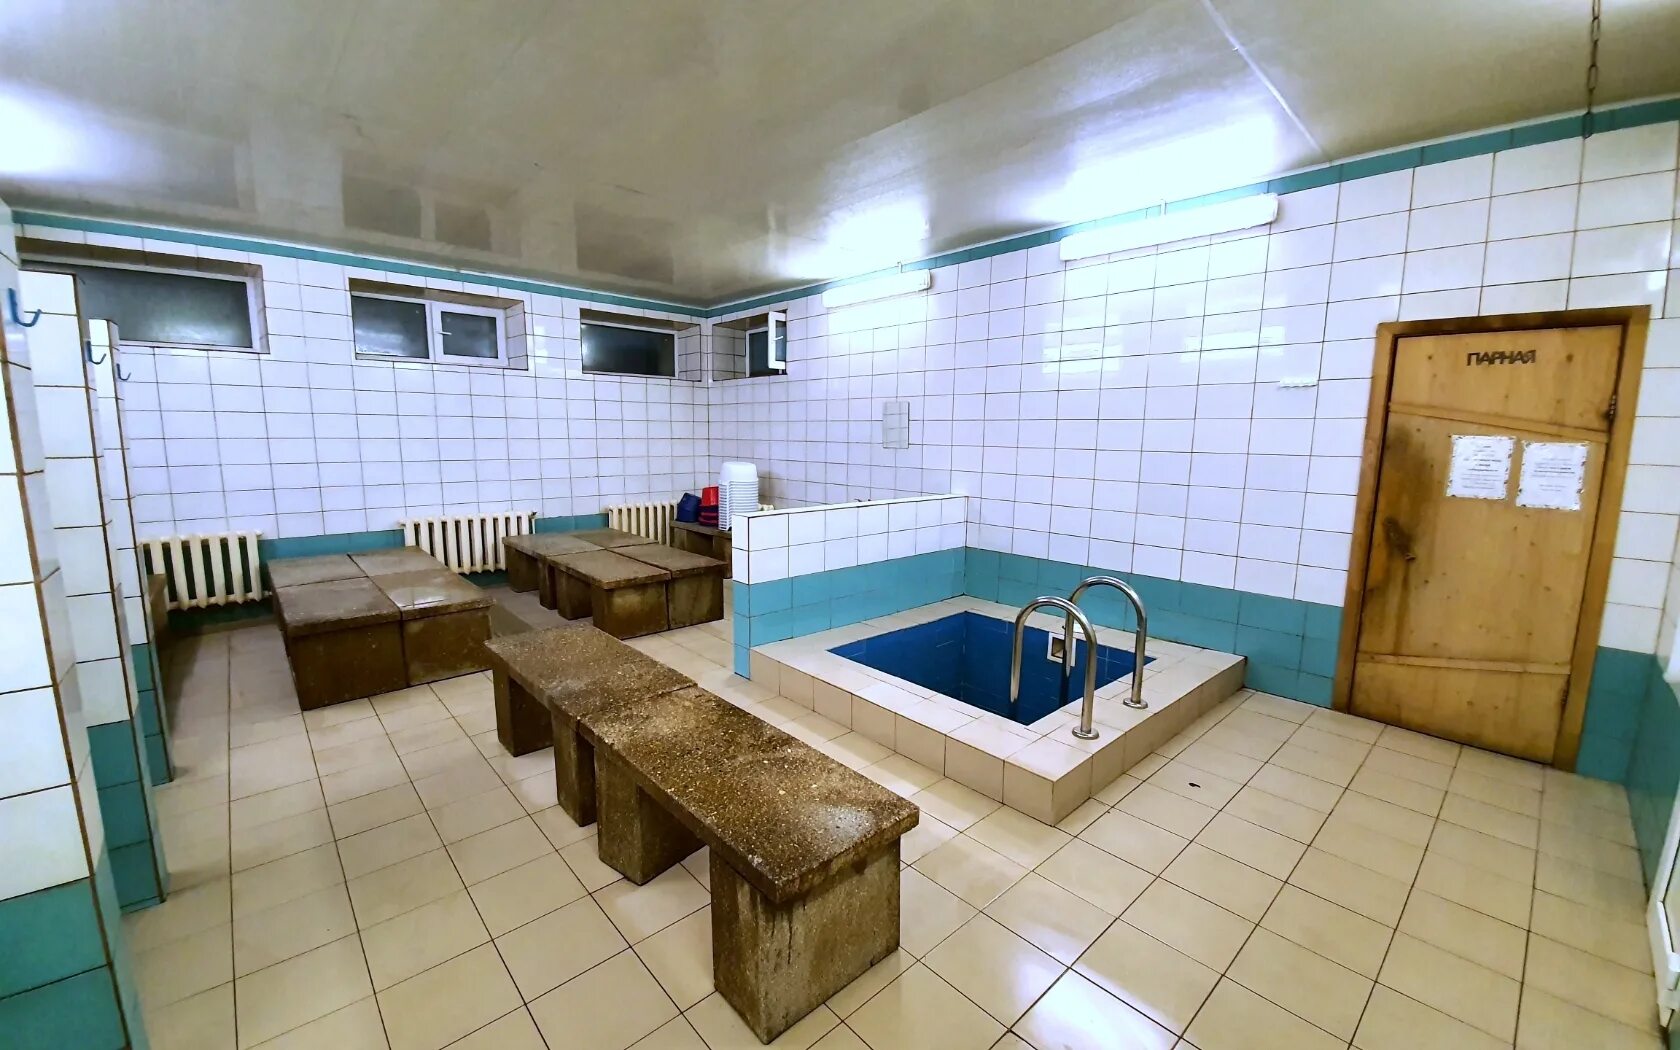 Баня на университетском, Тверь. Общественная баня Эстония. Баня номер 6 Тверь. Благовещенская общественная баня. Общая баня для мужчин москва